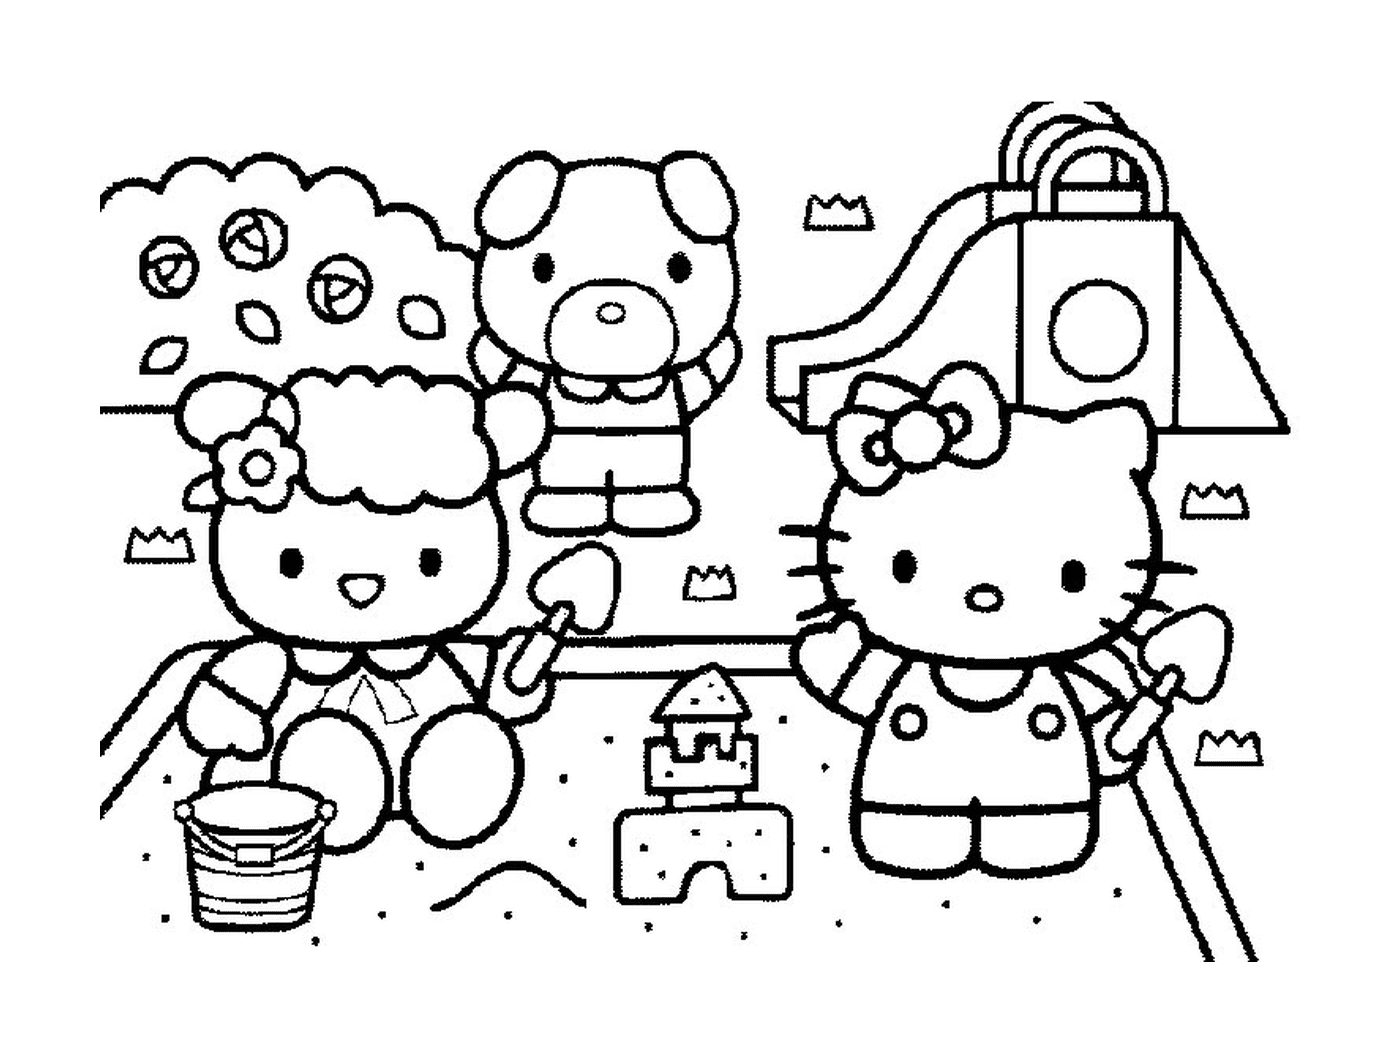  Hello Kitty Group and Teddy Bear 